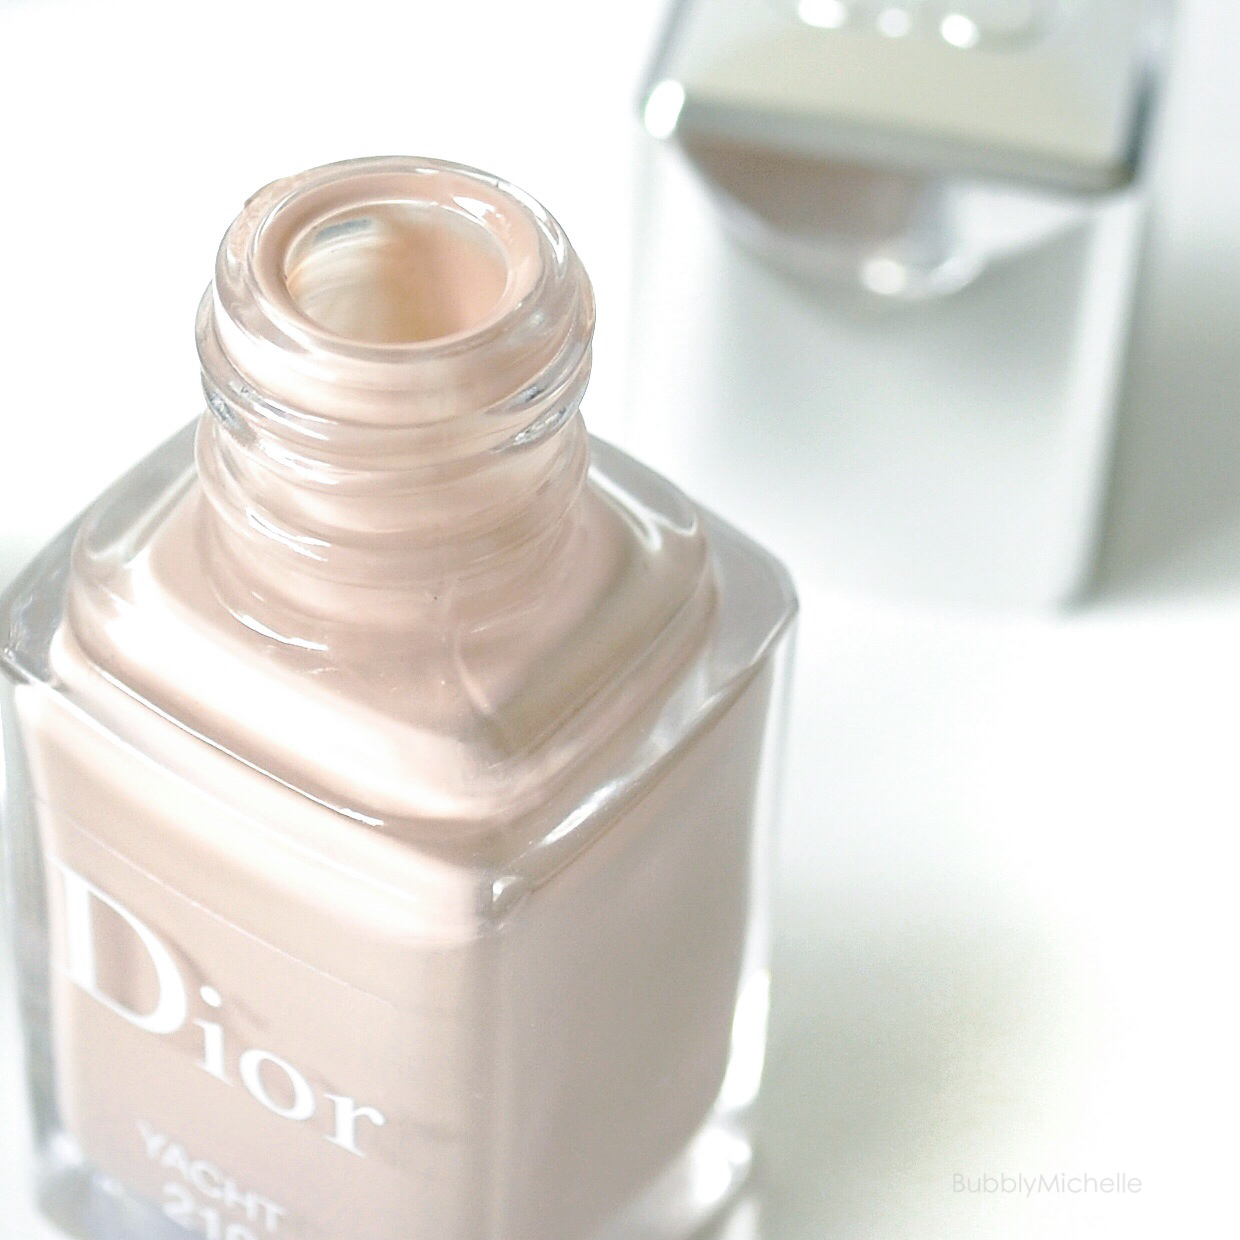 Dior – Bubbly Michelle